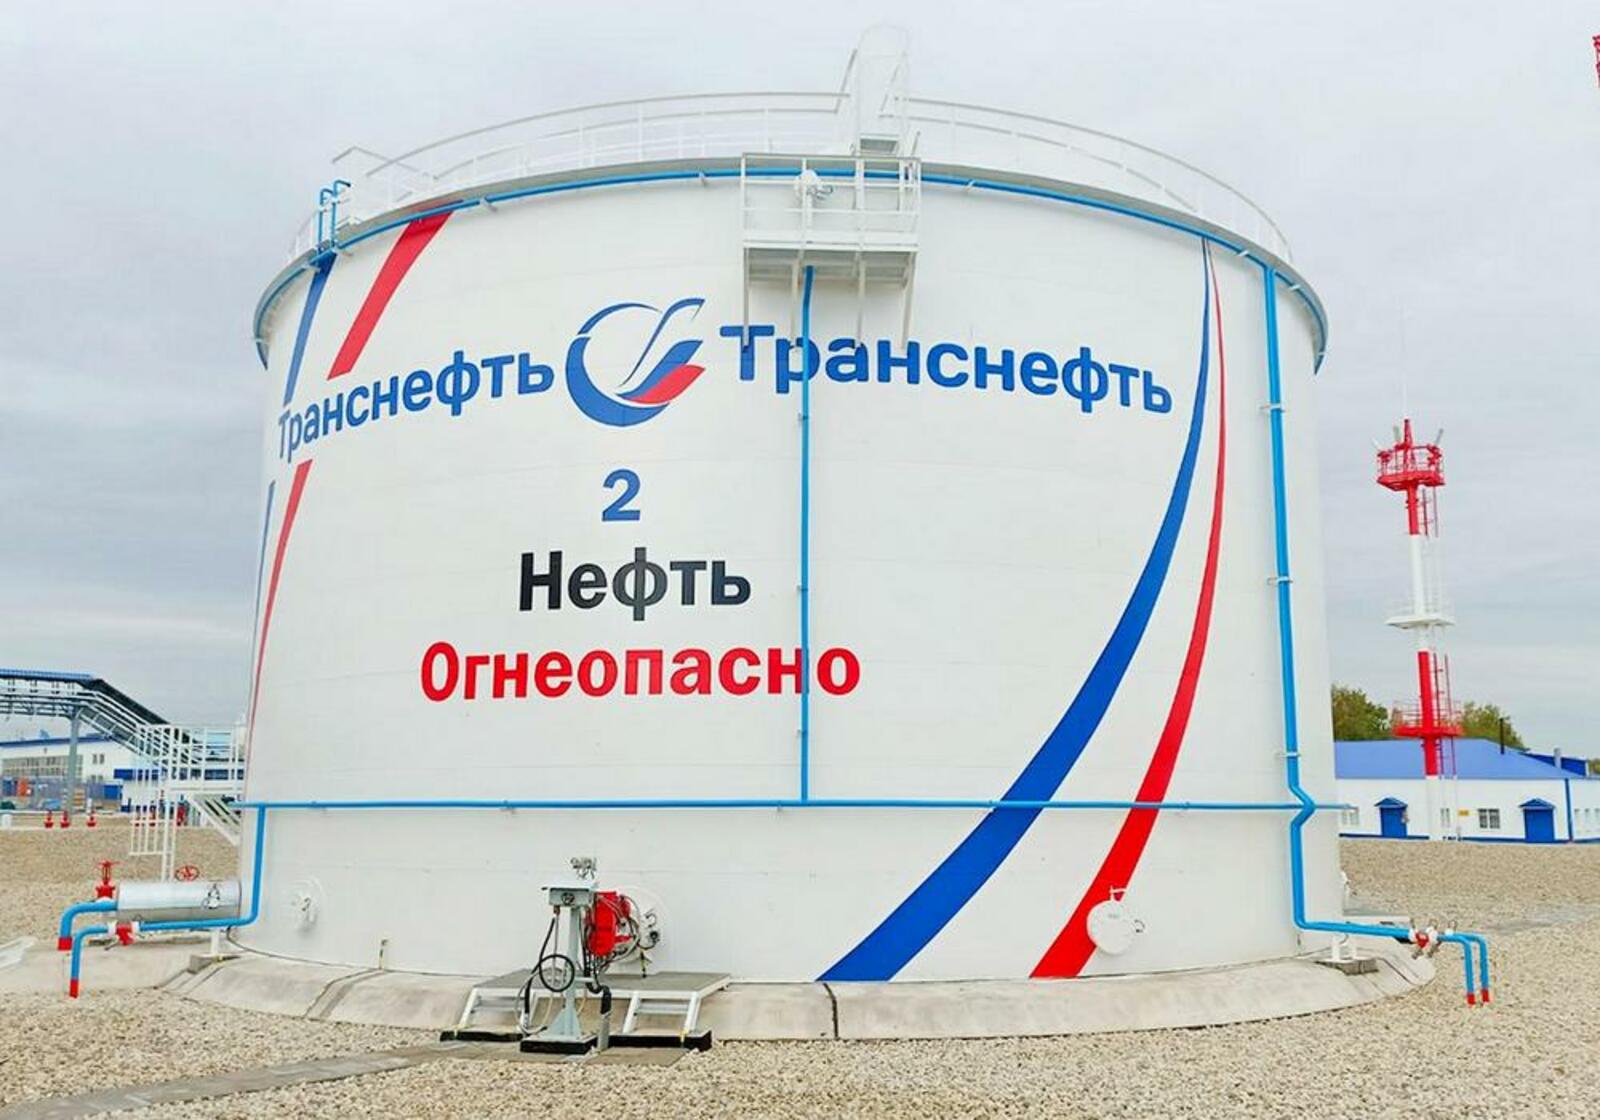 АО «Транснефть — Урал» реконструировало резервуар в Чекмагушевском районе Башкирии